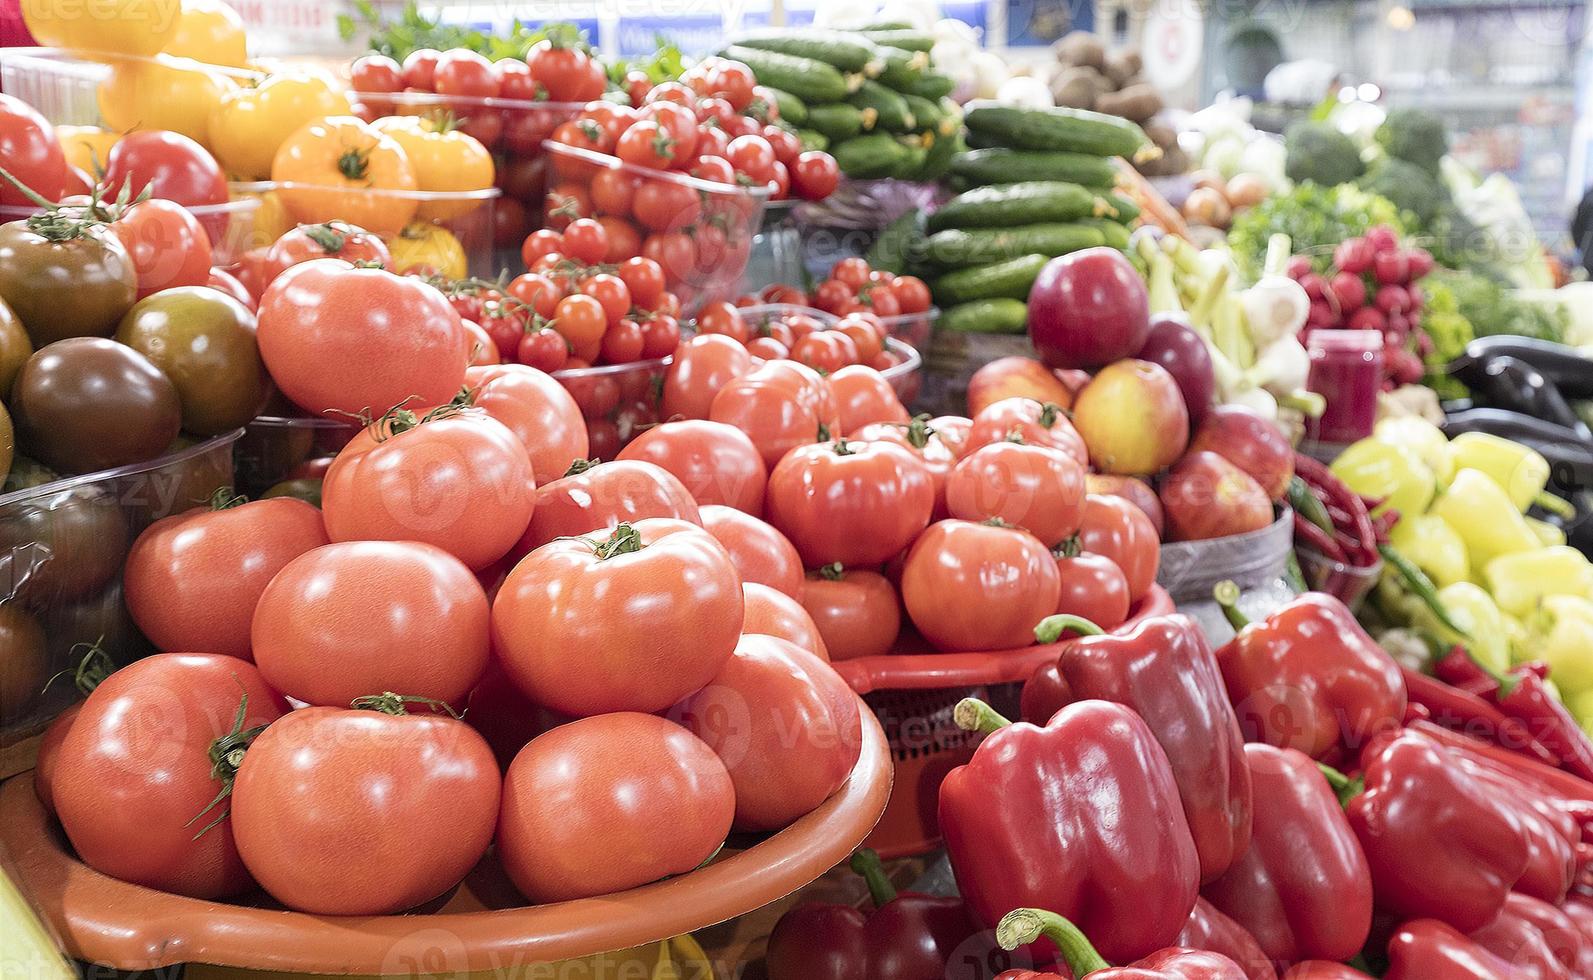 pomodori, cetrioli, peperoni e altre verdure in vendita sul mercato foto